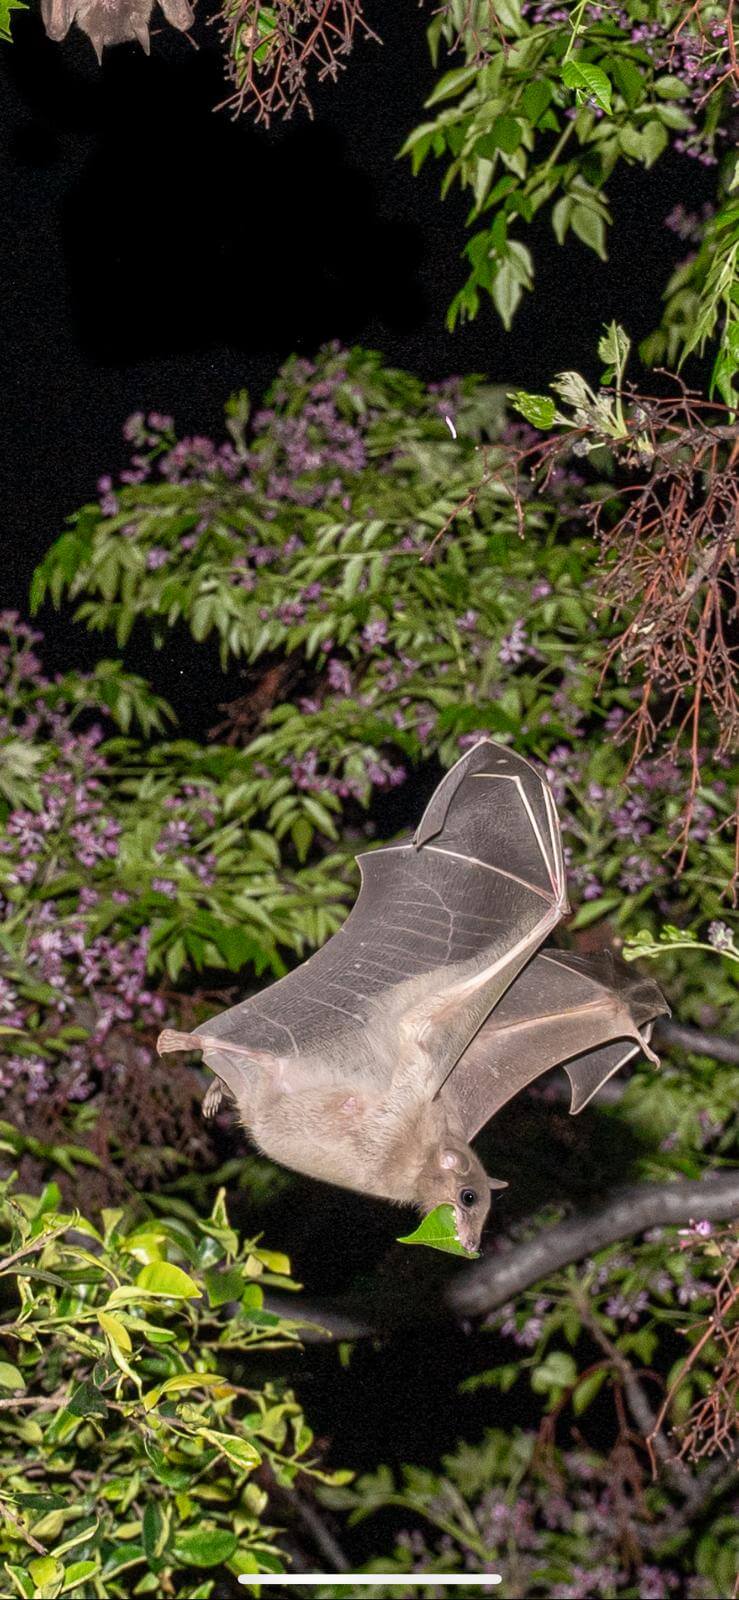 Bats in isolation. Photo: Yuval Barkai